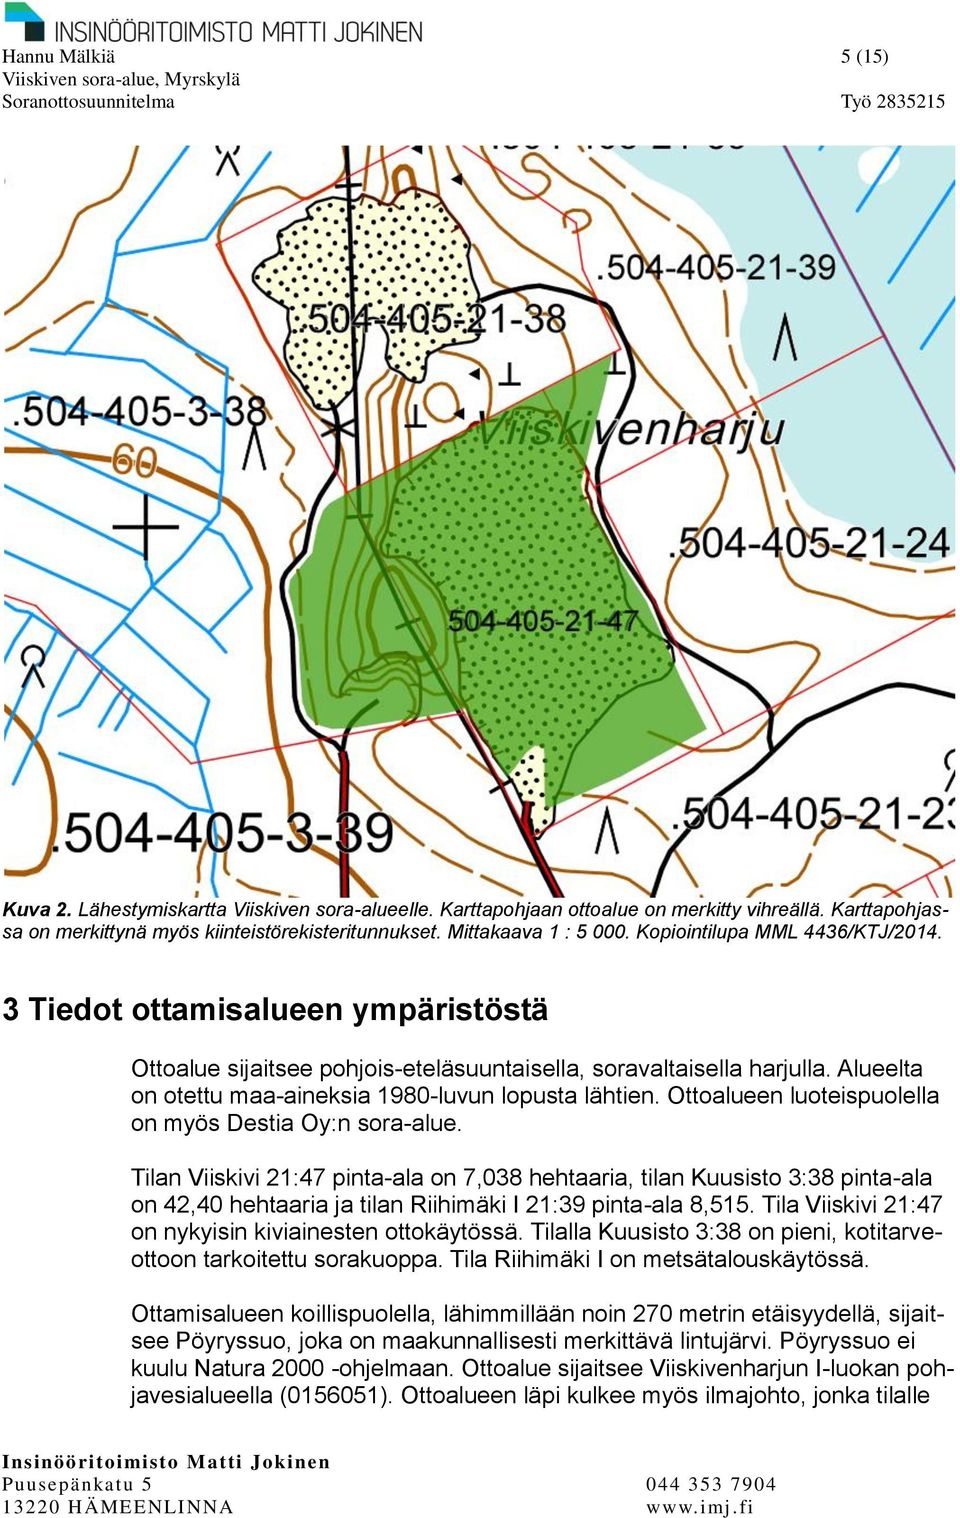 Alueelta on otettu maa-aineksia 1980-luvun lopusta lähtien. Ottoalueen luoteispuolella on myös Destia Oy:n sora-alue.